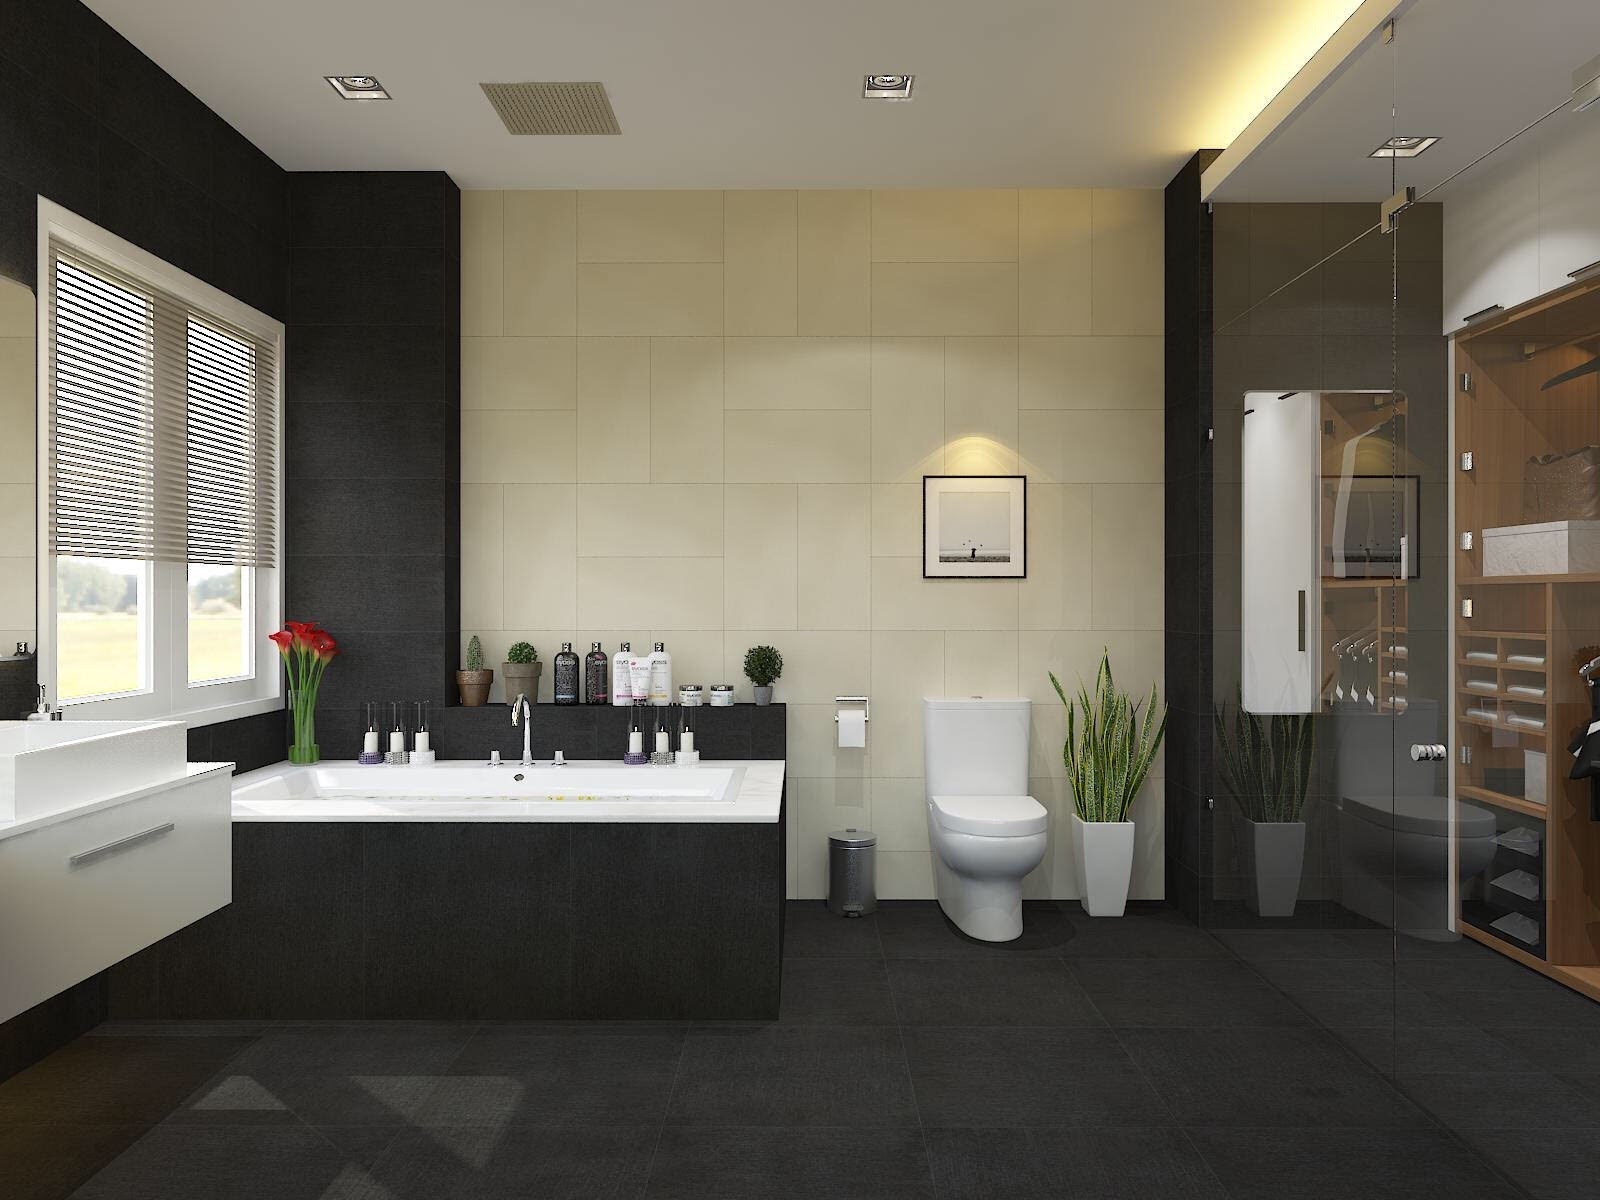 Thiết kế nội thất phòng tắm và nhà vệ sinh đẹp, hiện đại